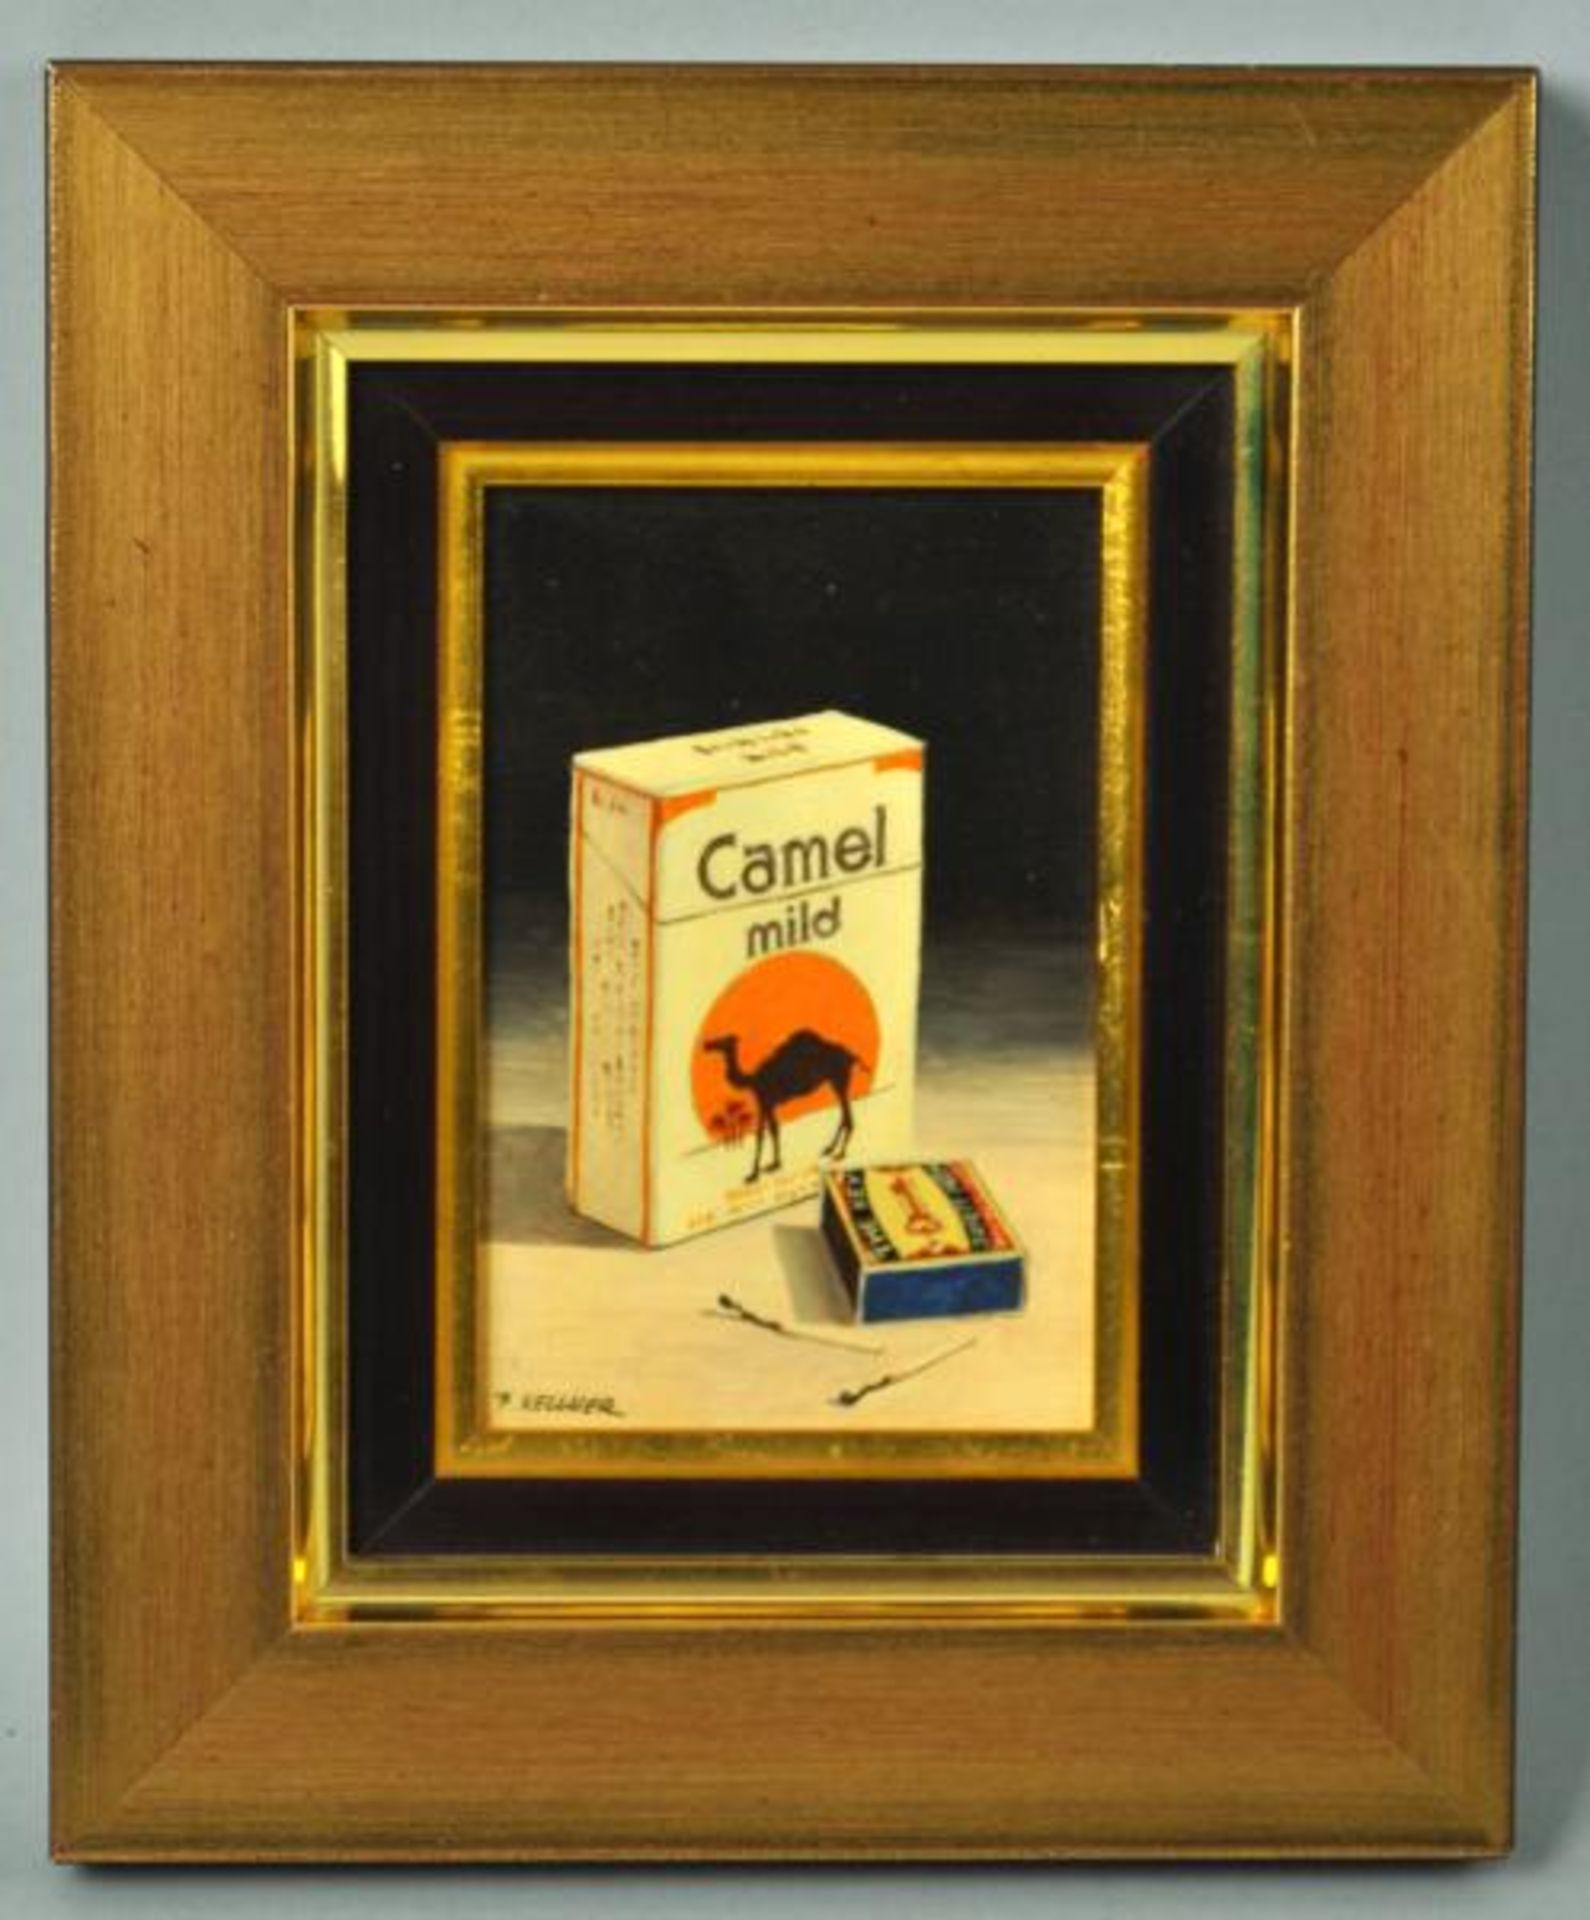 KELLNER Karel (Tschechien 2.Hälfte 20.Jh.) "Camel" Zigaretten , 2 Miniaturgemälde, Öl auf Holz, - Image 3 of 5